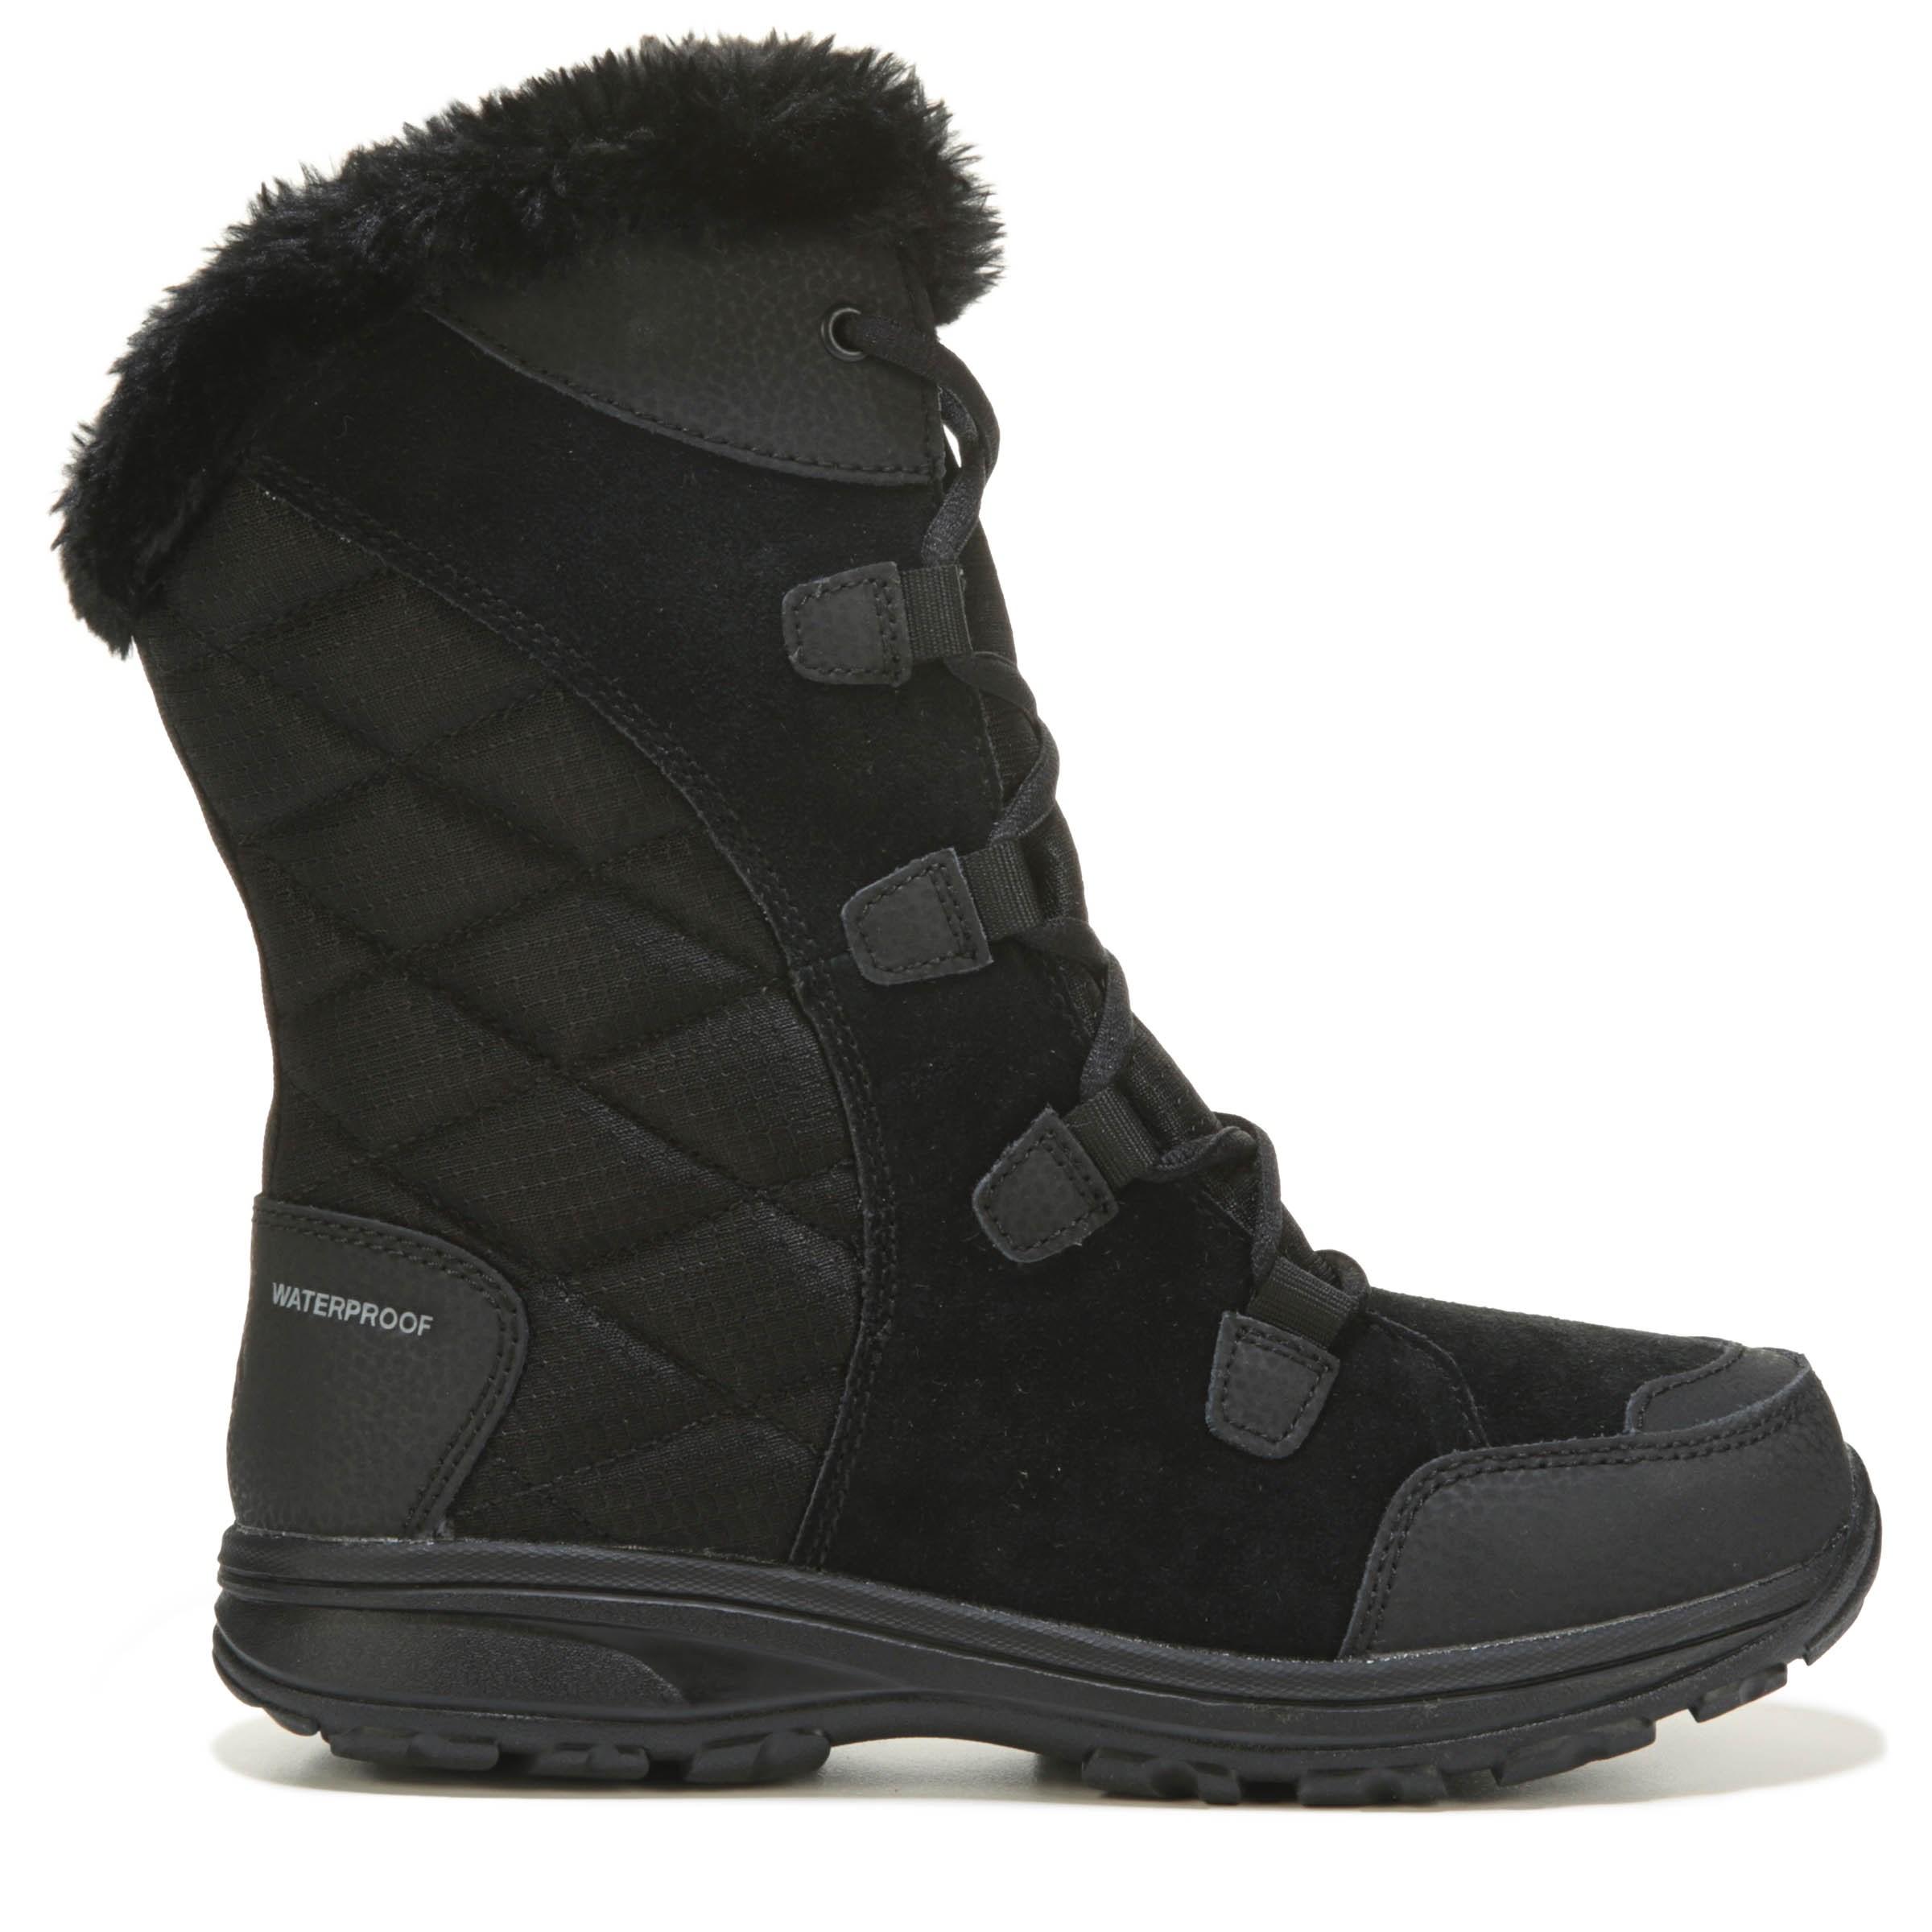 Columbia Ice Maiden Ii Waterproof Winter Snow Boots in Black - Lyst